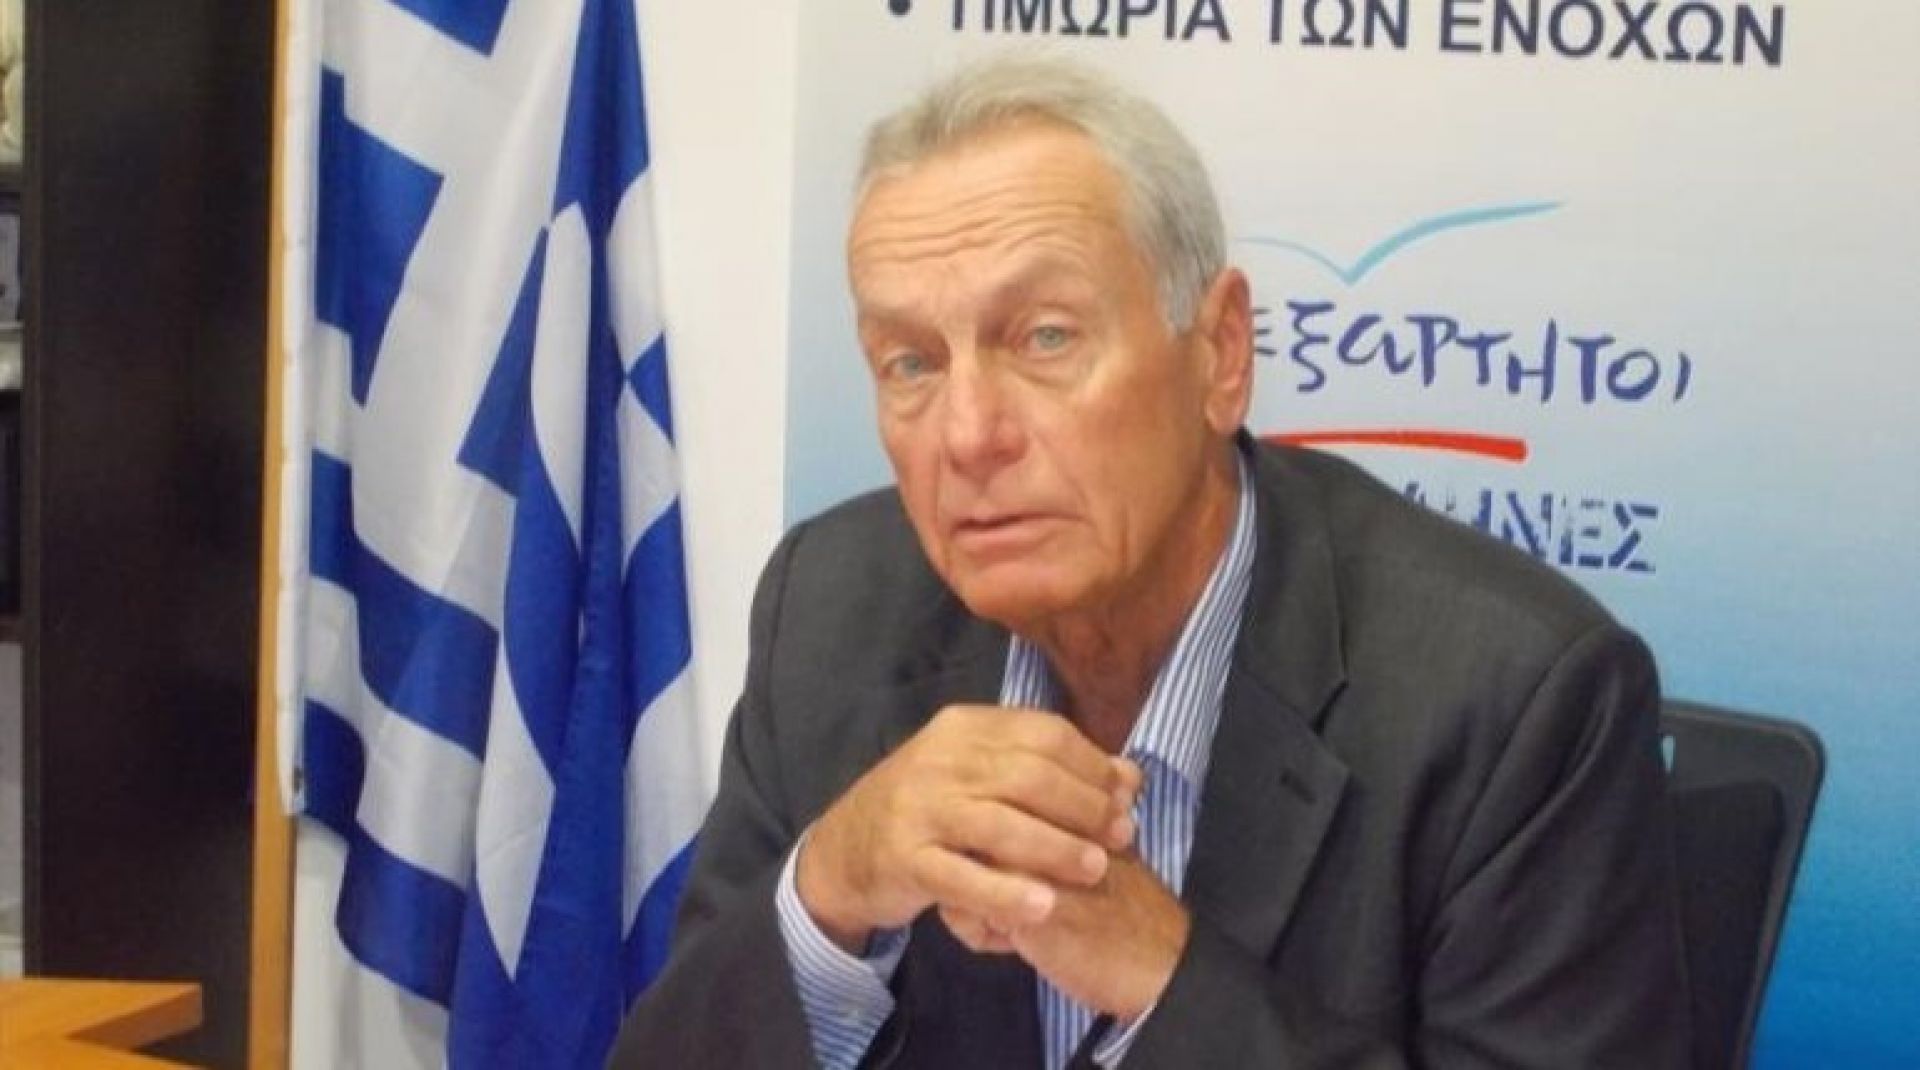 Π.Σγουρίδης: «Κουντουρά και Κόκκαλης έδωσαν την ψήφος τους για να κρατήσουν την υπουργική καρέκλα»